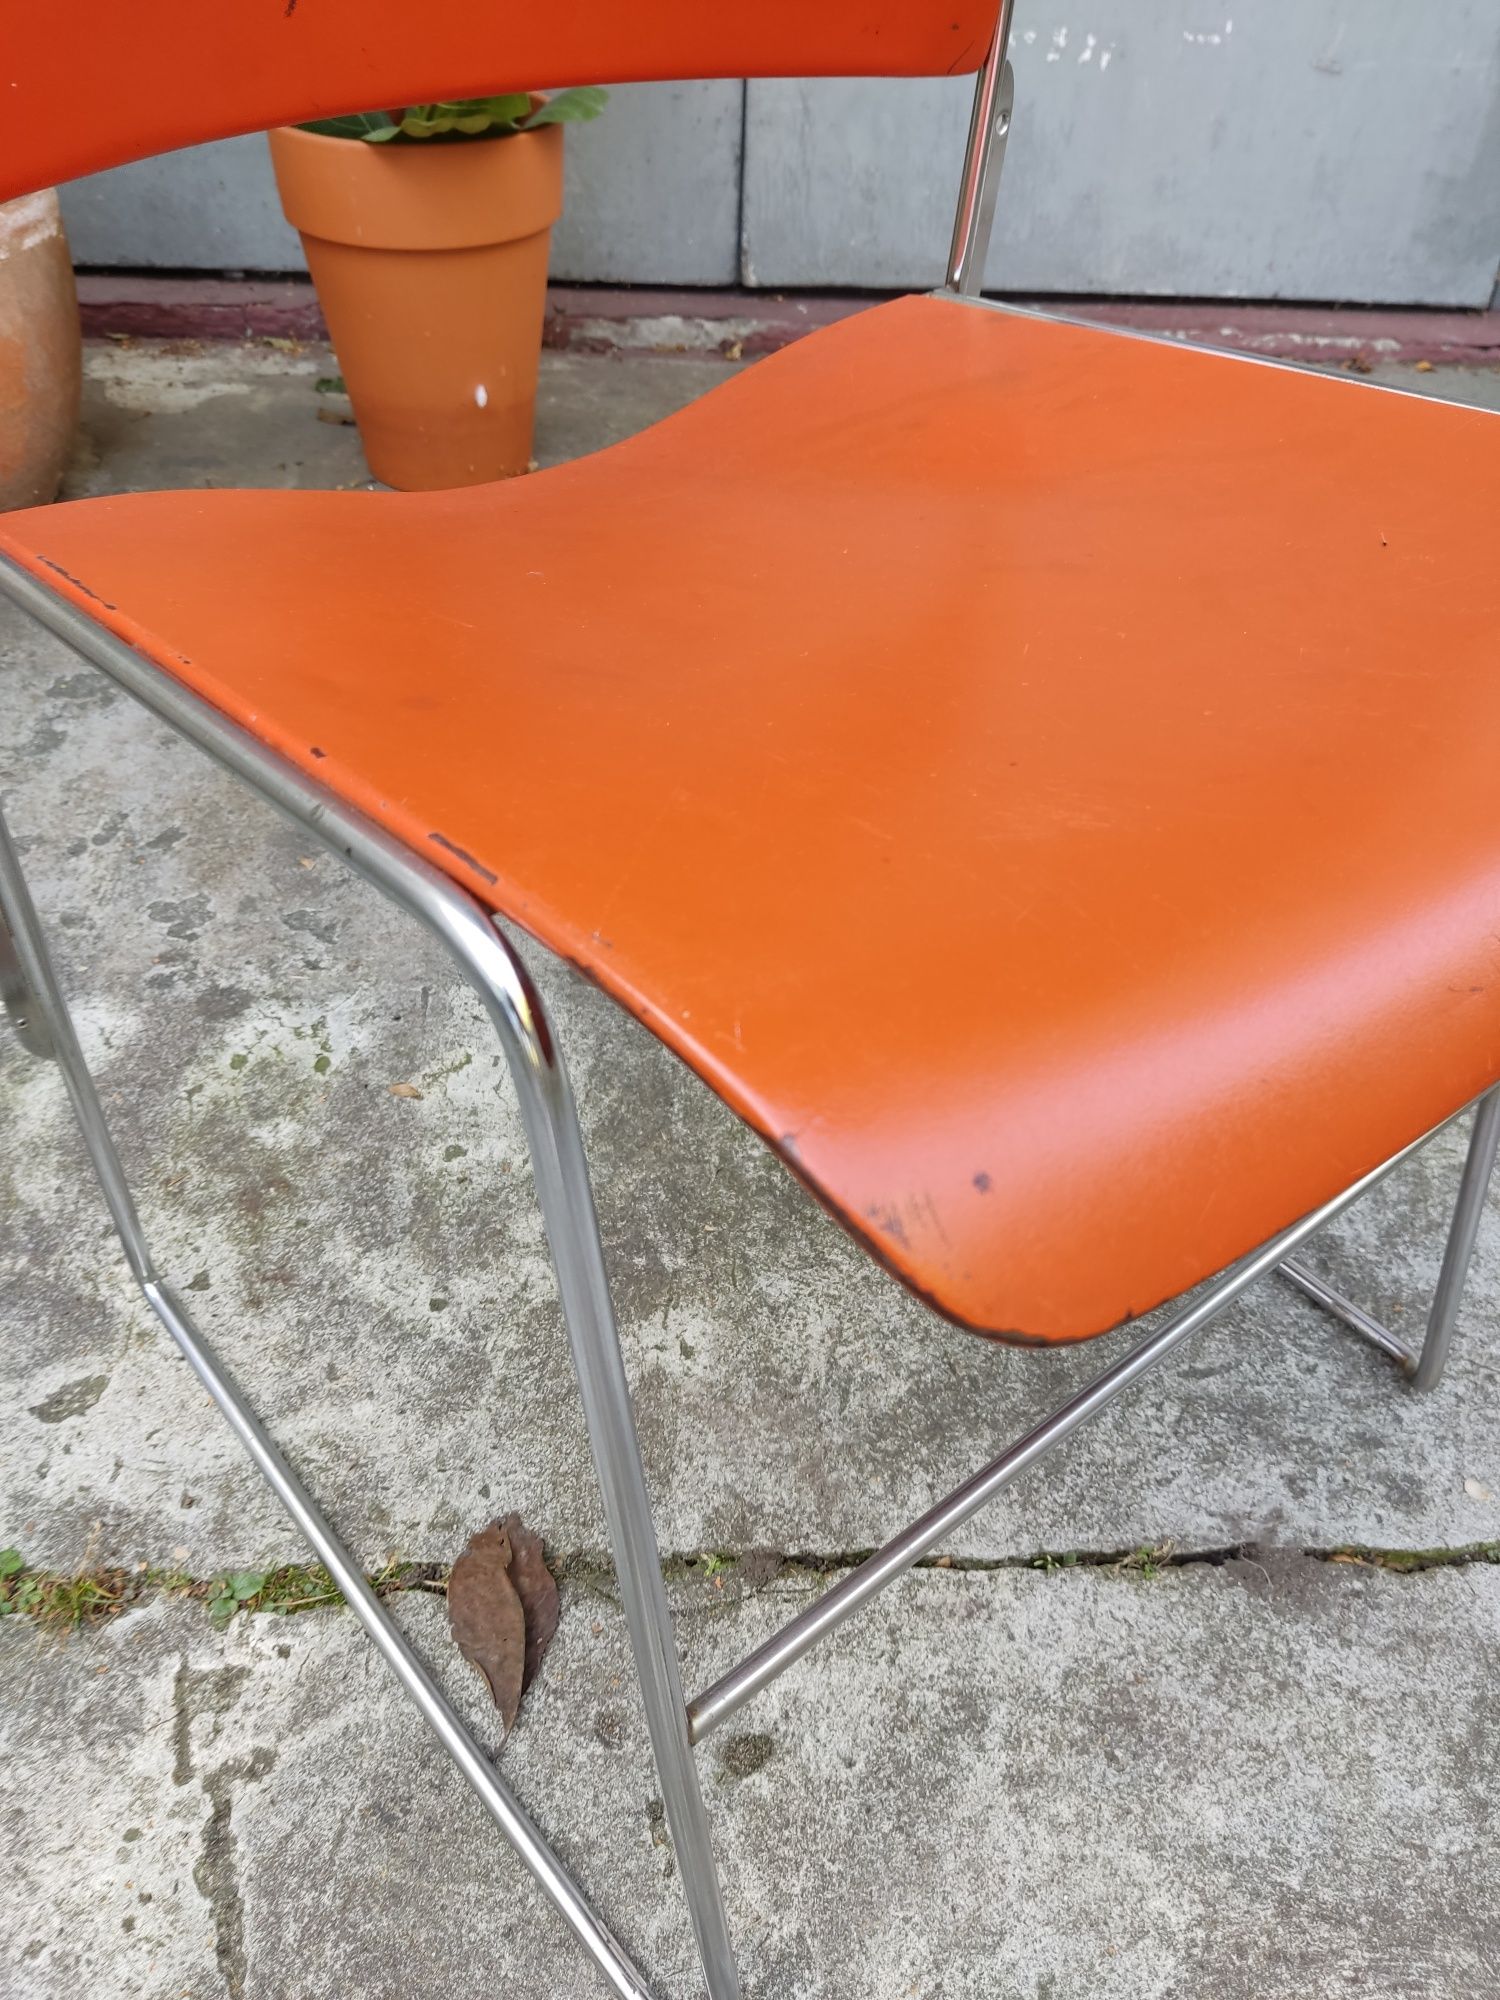 Krzesło metalowe proj David Rowland lata 60 te Dania vintage design